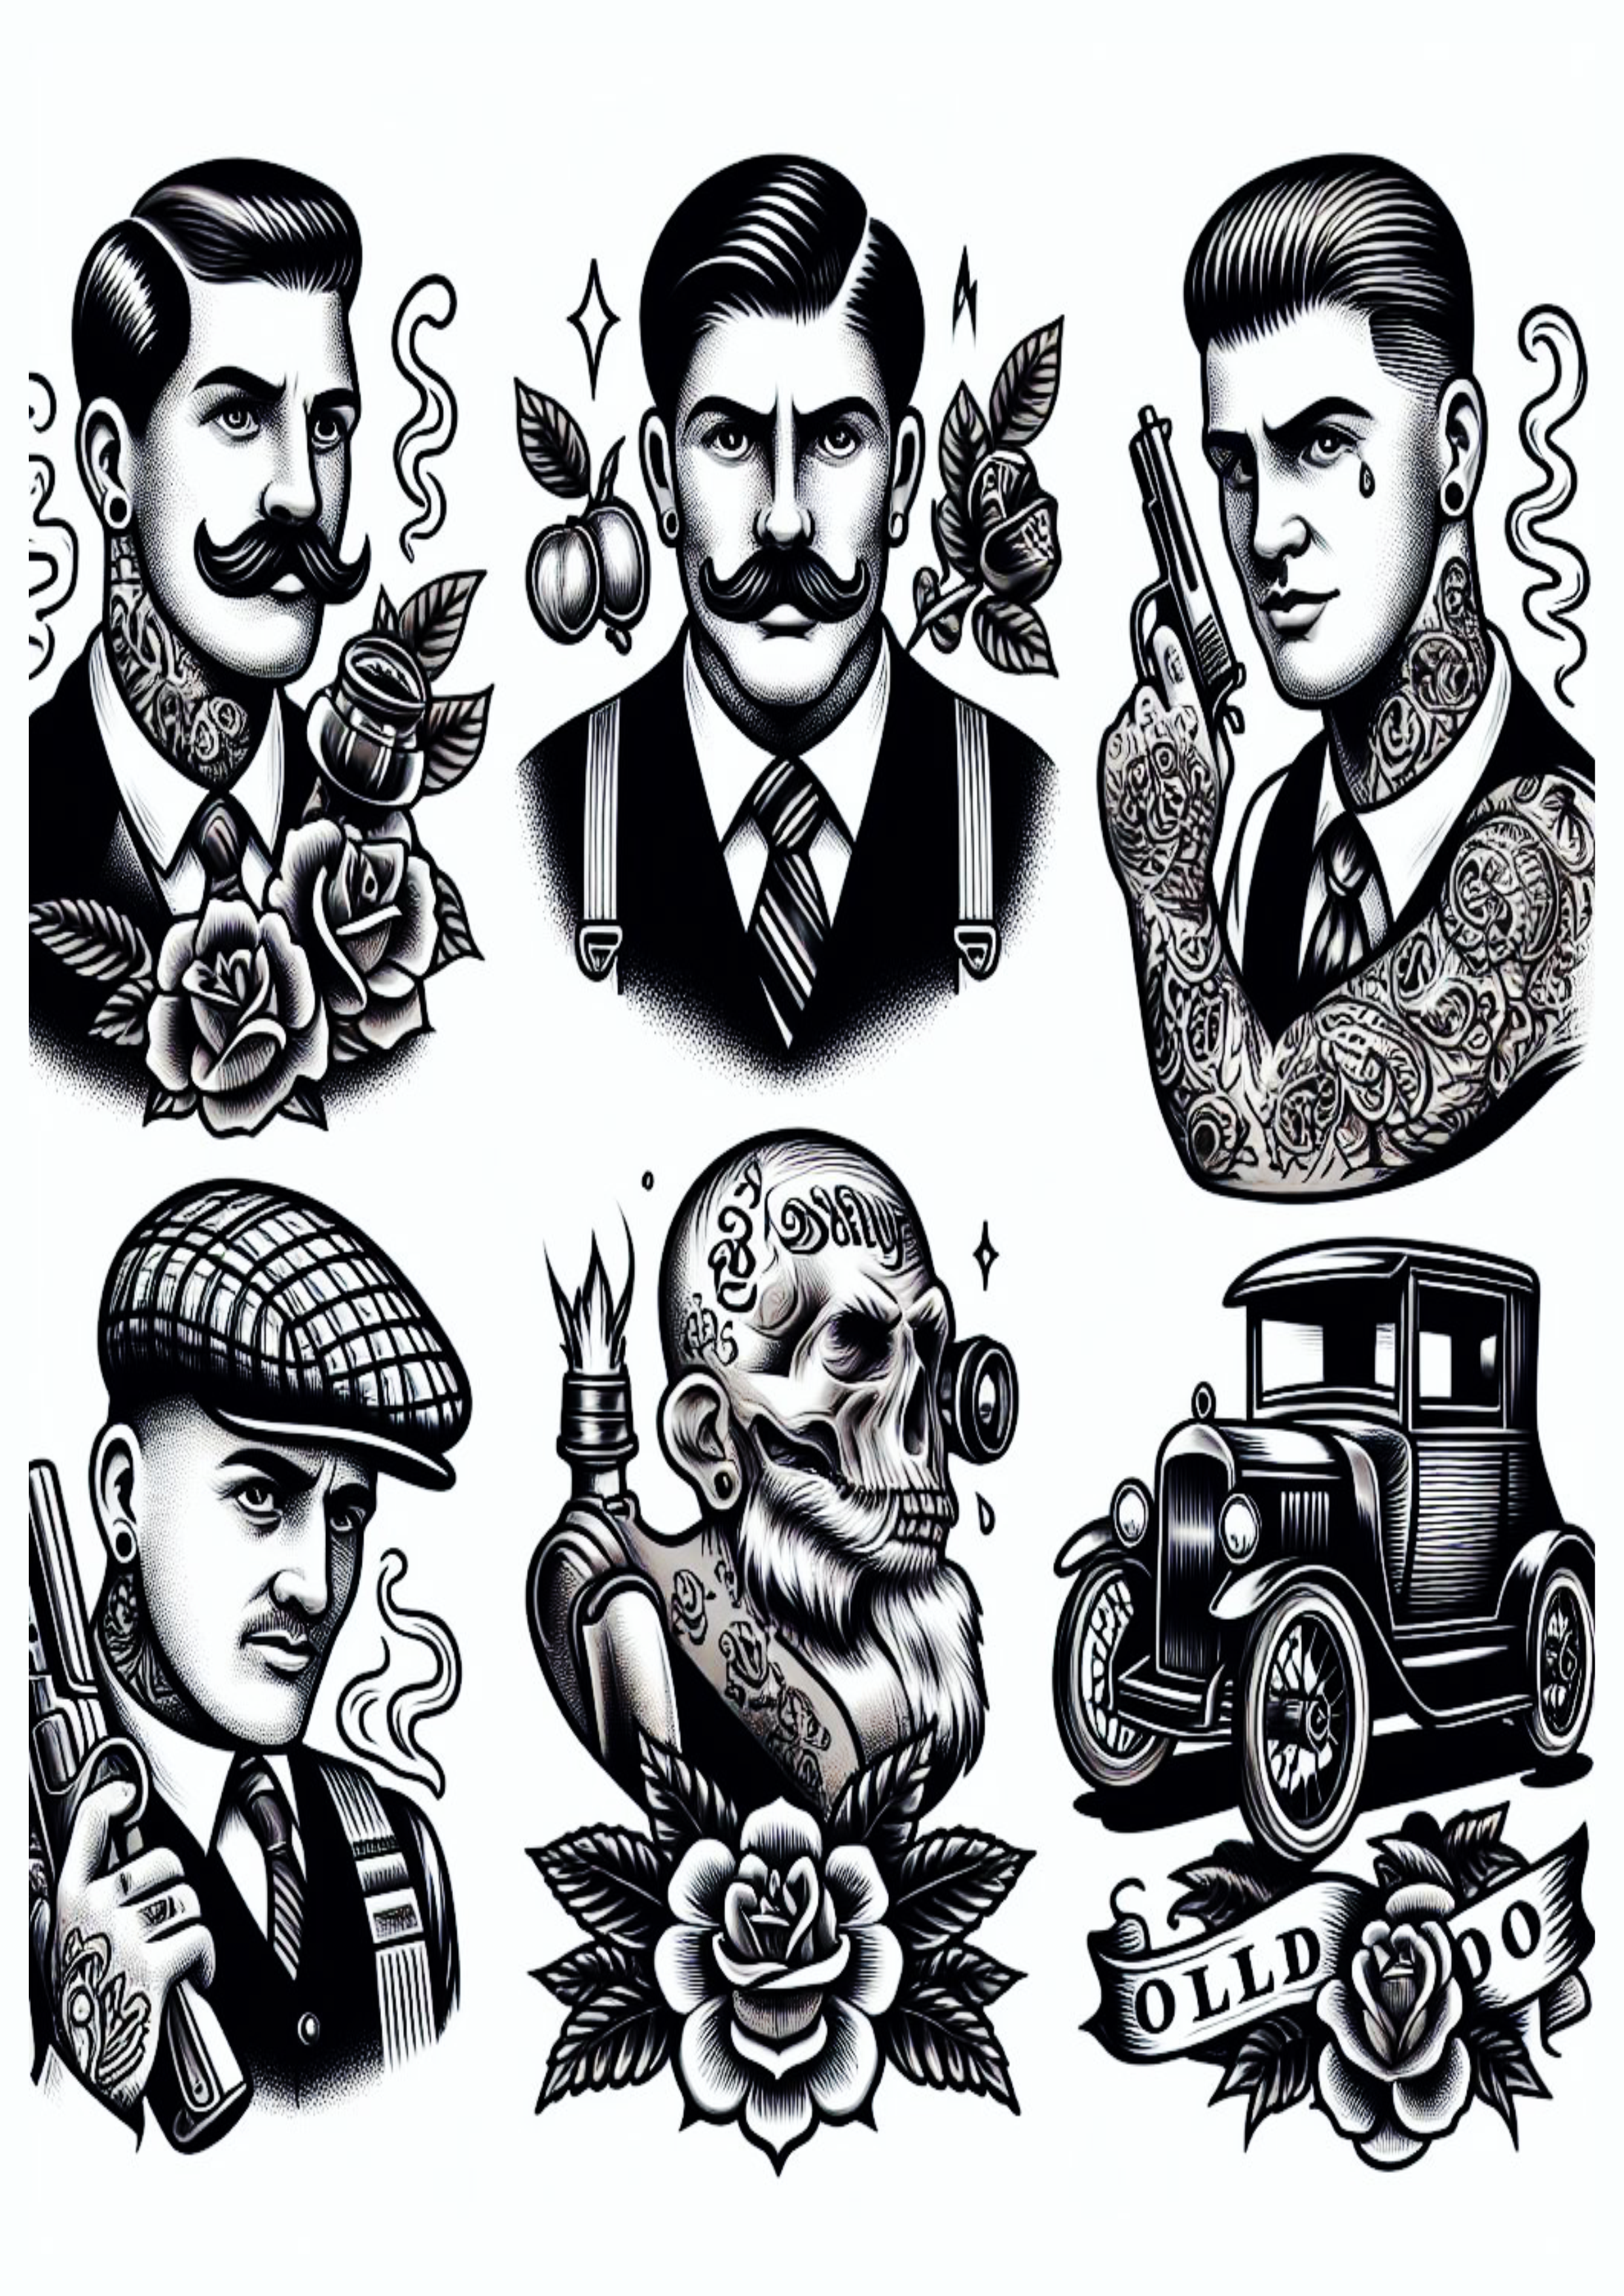 Ideias variadas para tatuagens old school artes conceituais png caveiras skull  arte conceitual